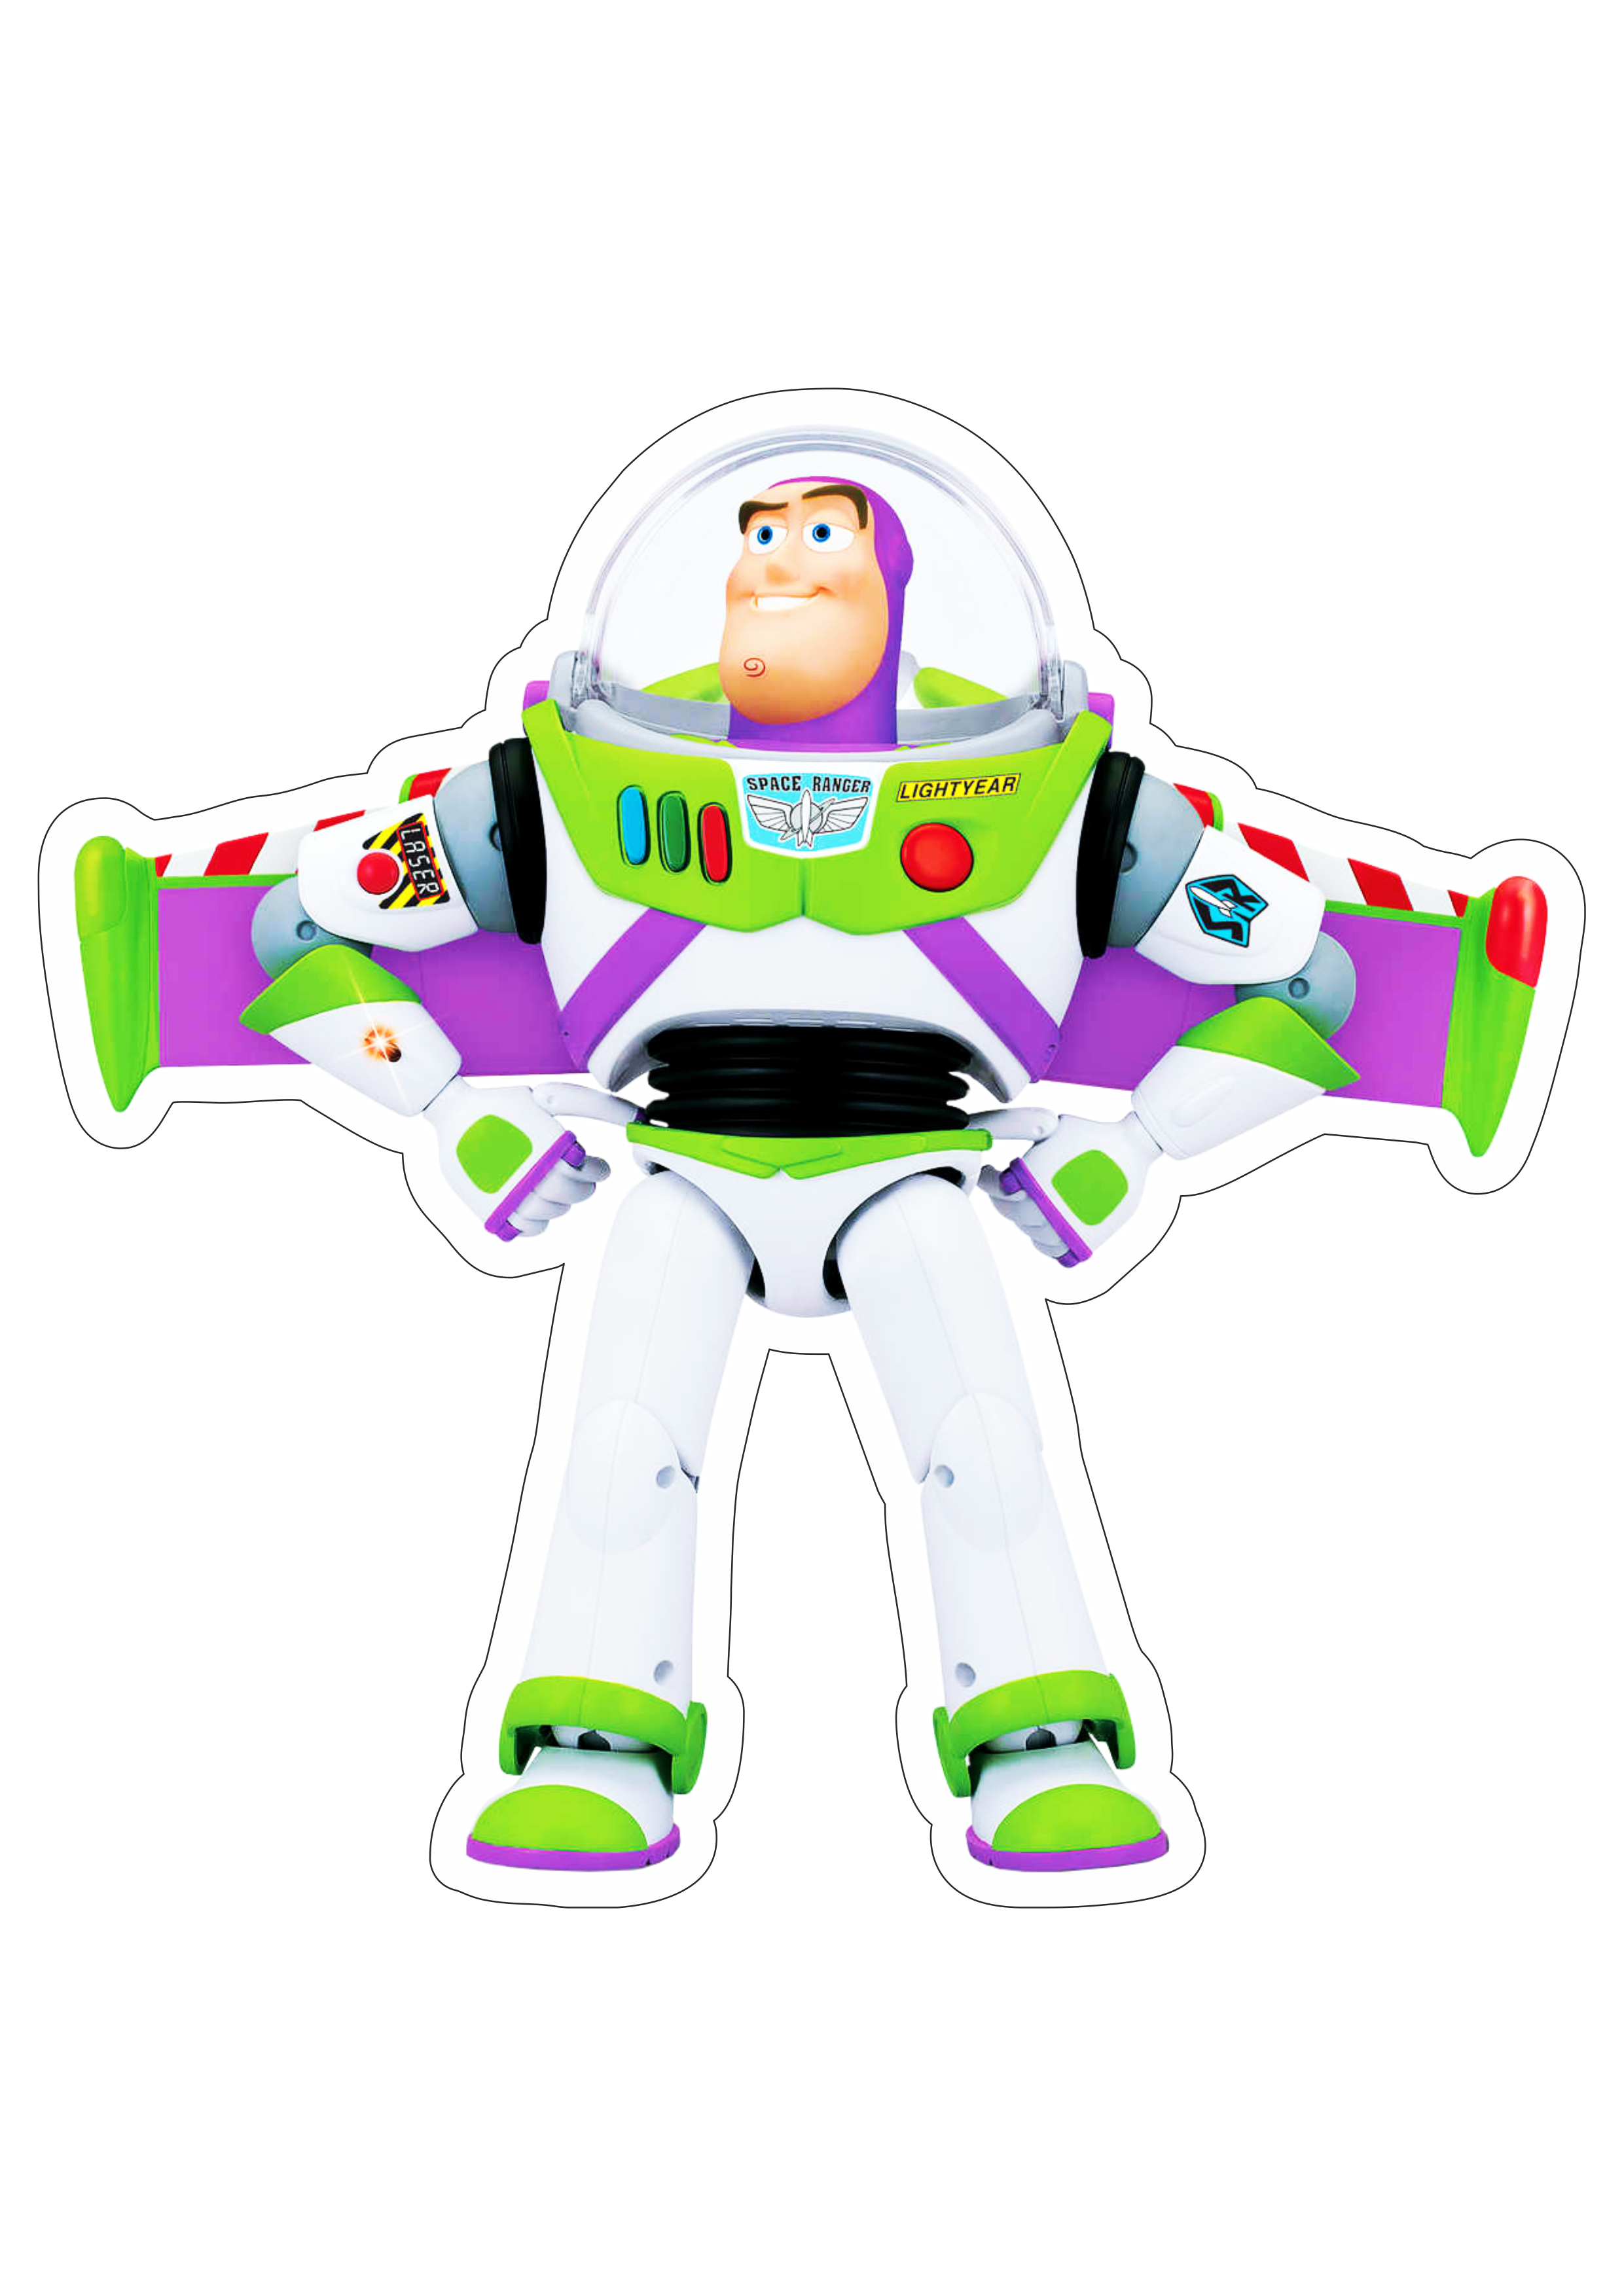 Toy Story Buzz Lightyear brinquedo astronauta disney plus streaming desenho infantil fundo transparente com contorno png